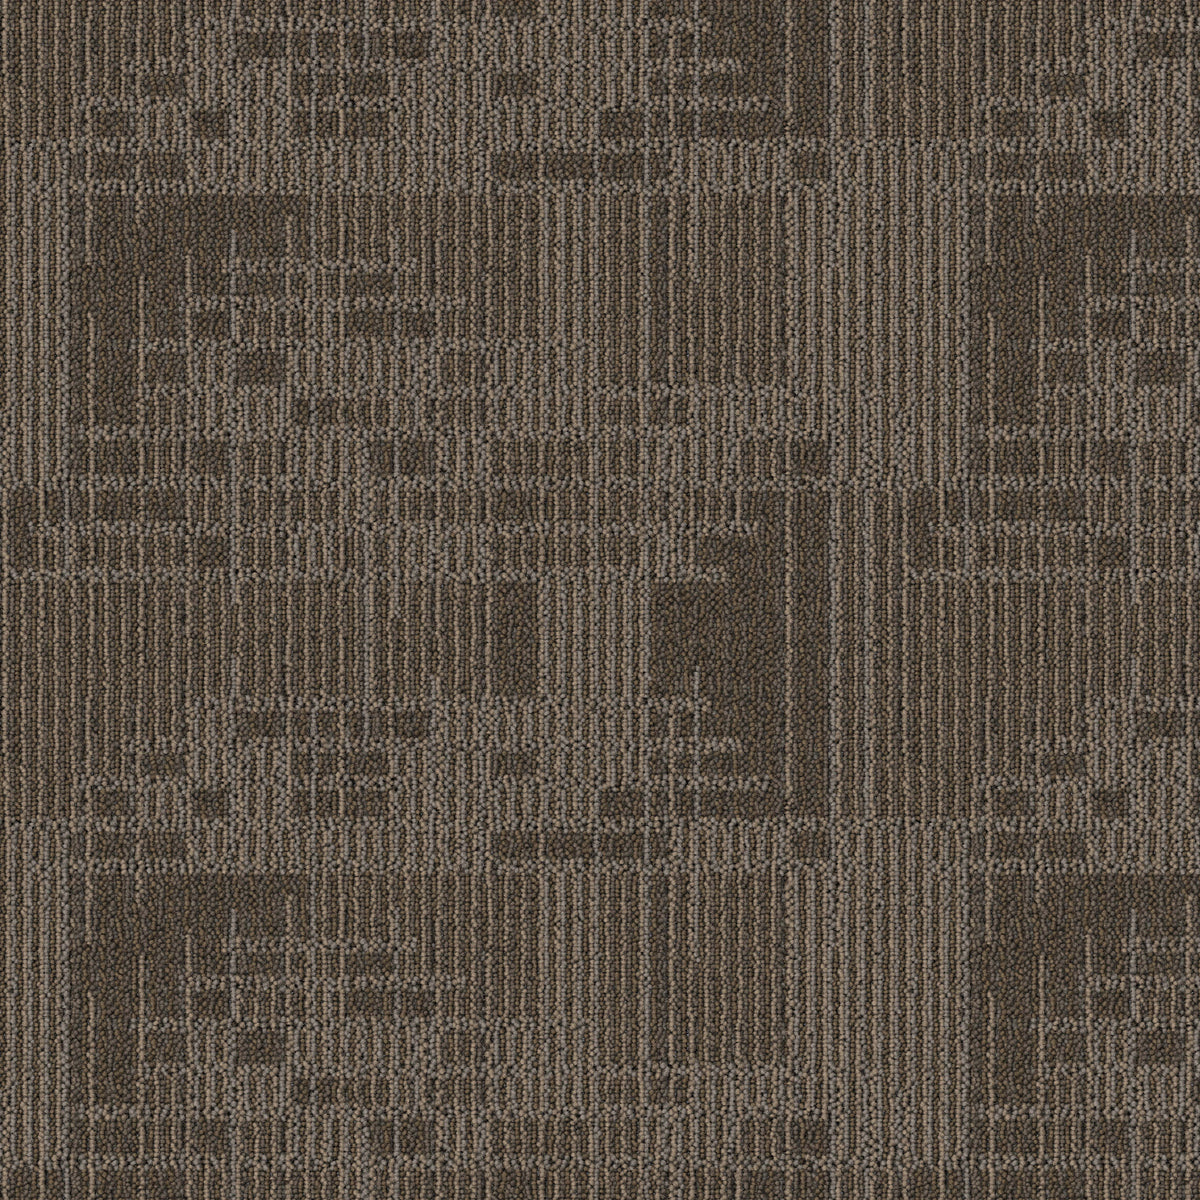 Mohawk Group - Bending Earth - Caliber - Carpet Tile - Chert